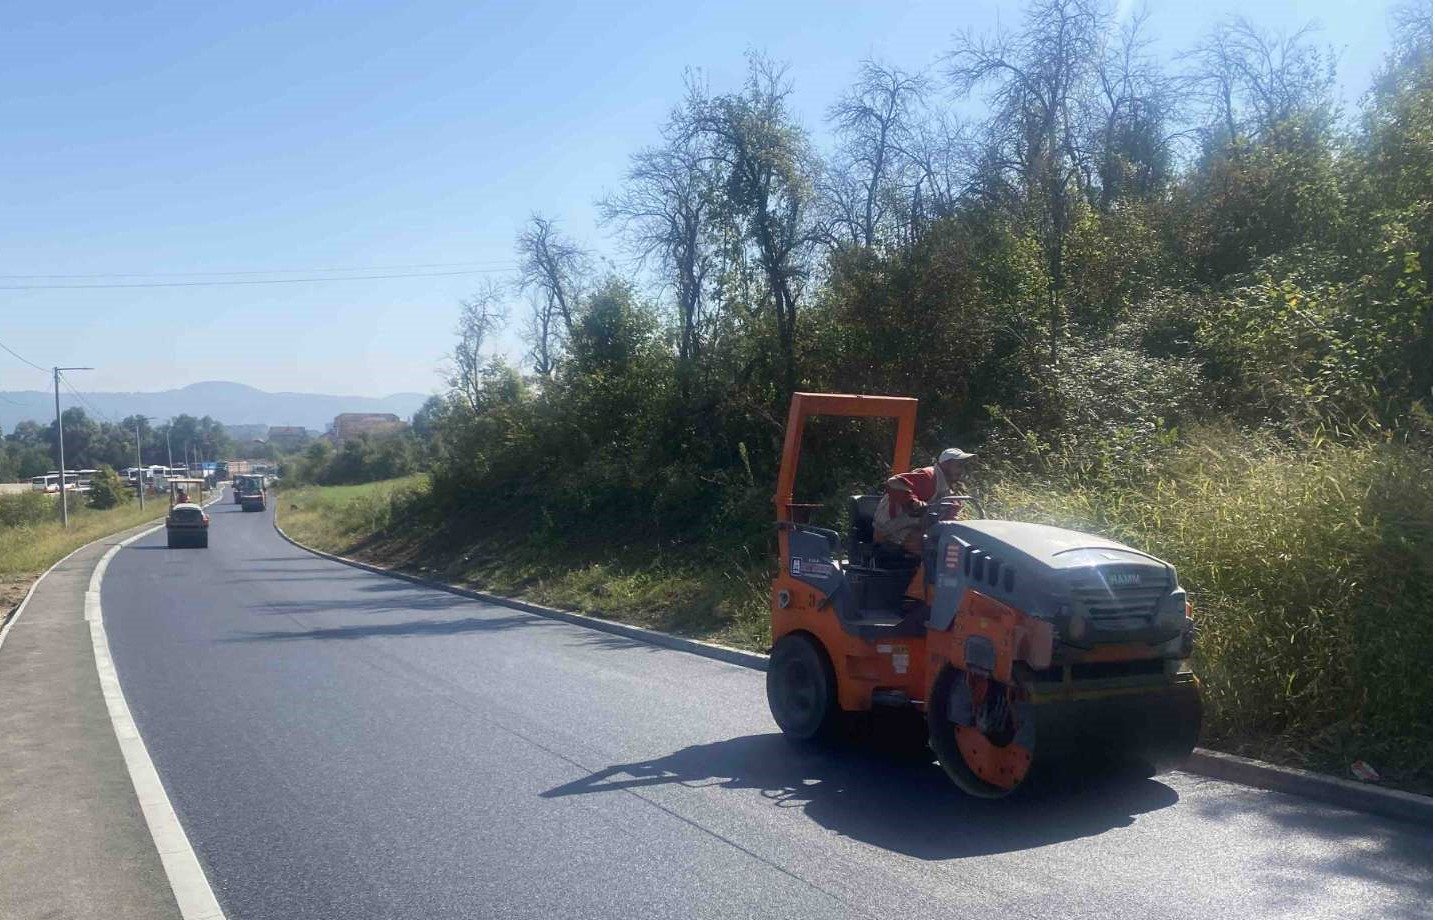 Radovi na putu prema Motikama: U toku postavljanje završnog sloja asfalta